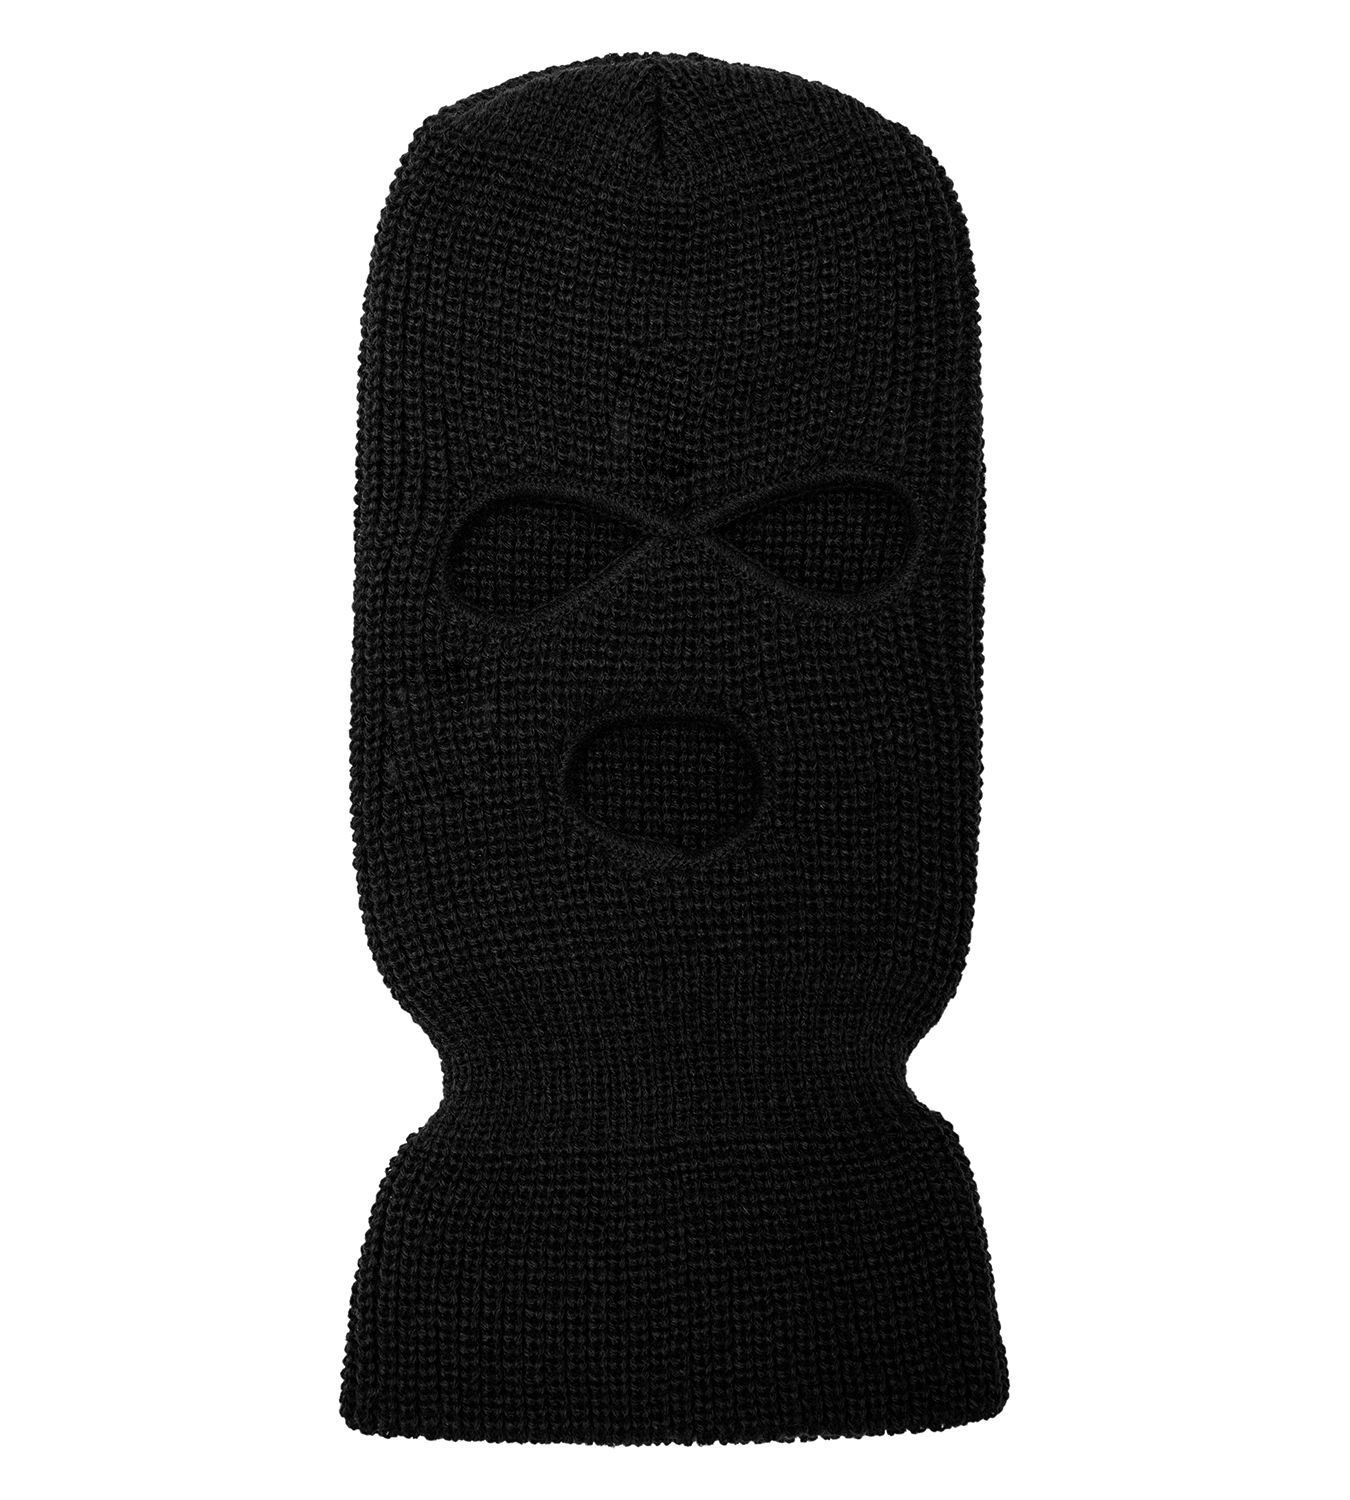 3 Hole Full Face Ski Mask Embroidered Custom Design Balaclava